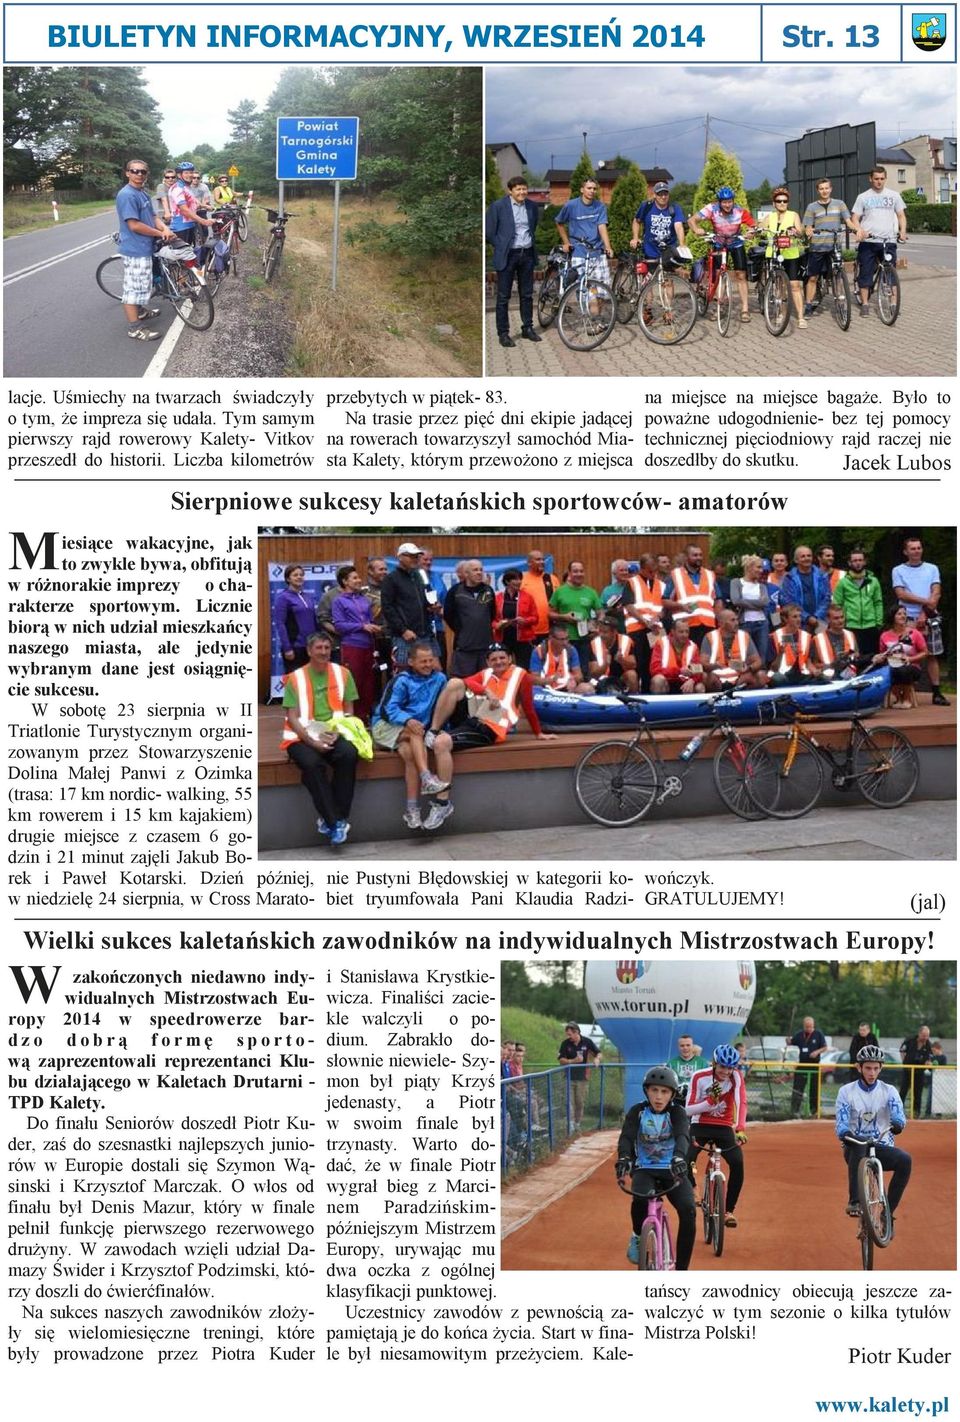 Na trasie przez pięć dni ekipie jadącej na rowerach towarzyszył samochód Miasta Kalety, którym przewożono z miejsca Sierpniowe sukcesy kaletańskich sportowców- amatorów na miejsce na miejsce bagaże.